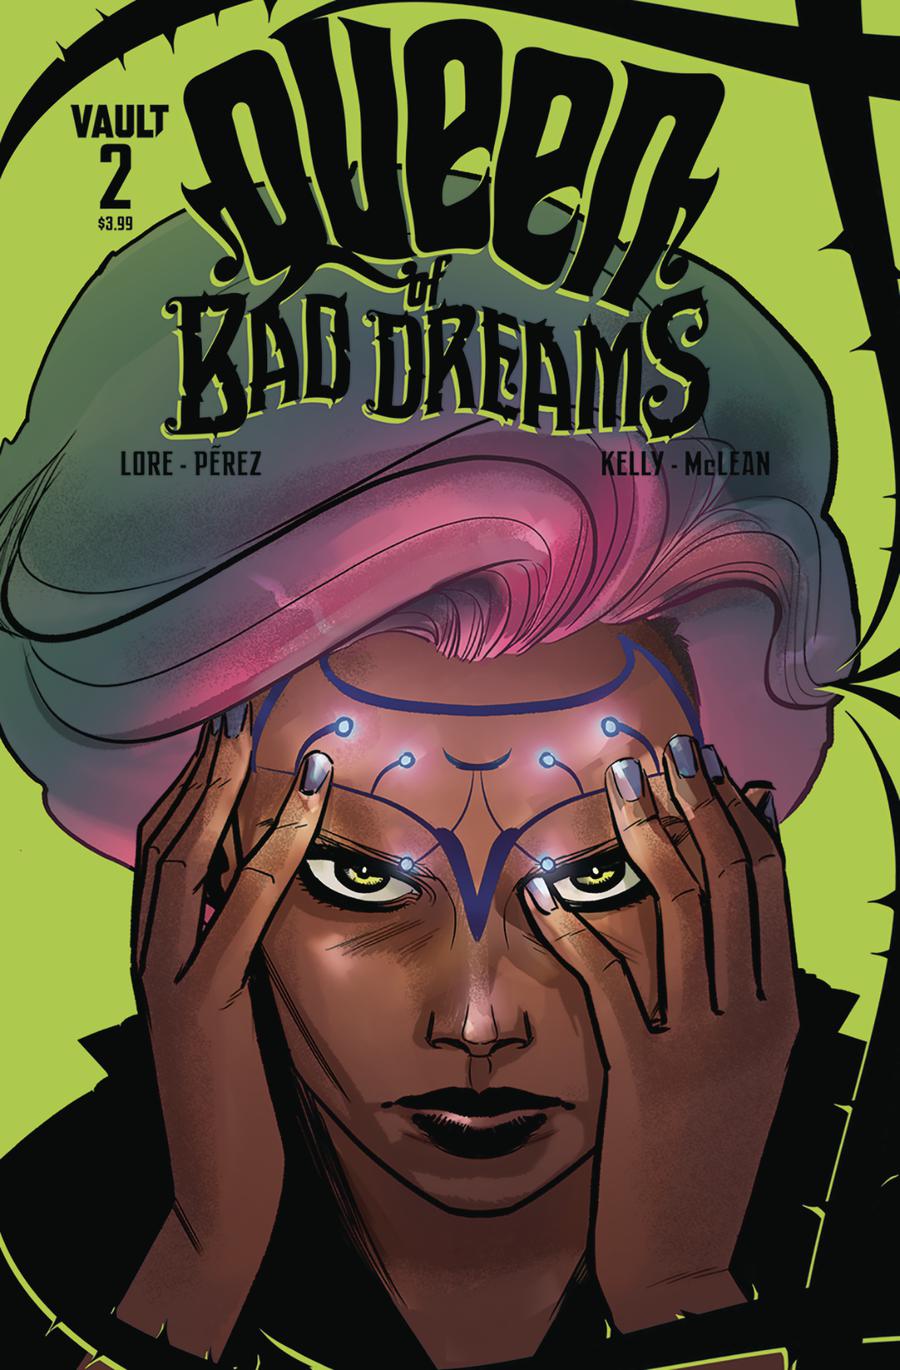 Queen Of Bad Dreams #2